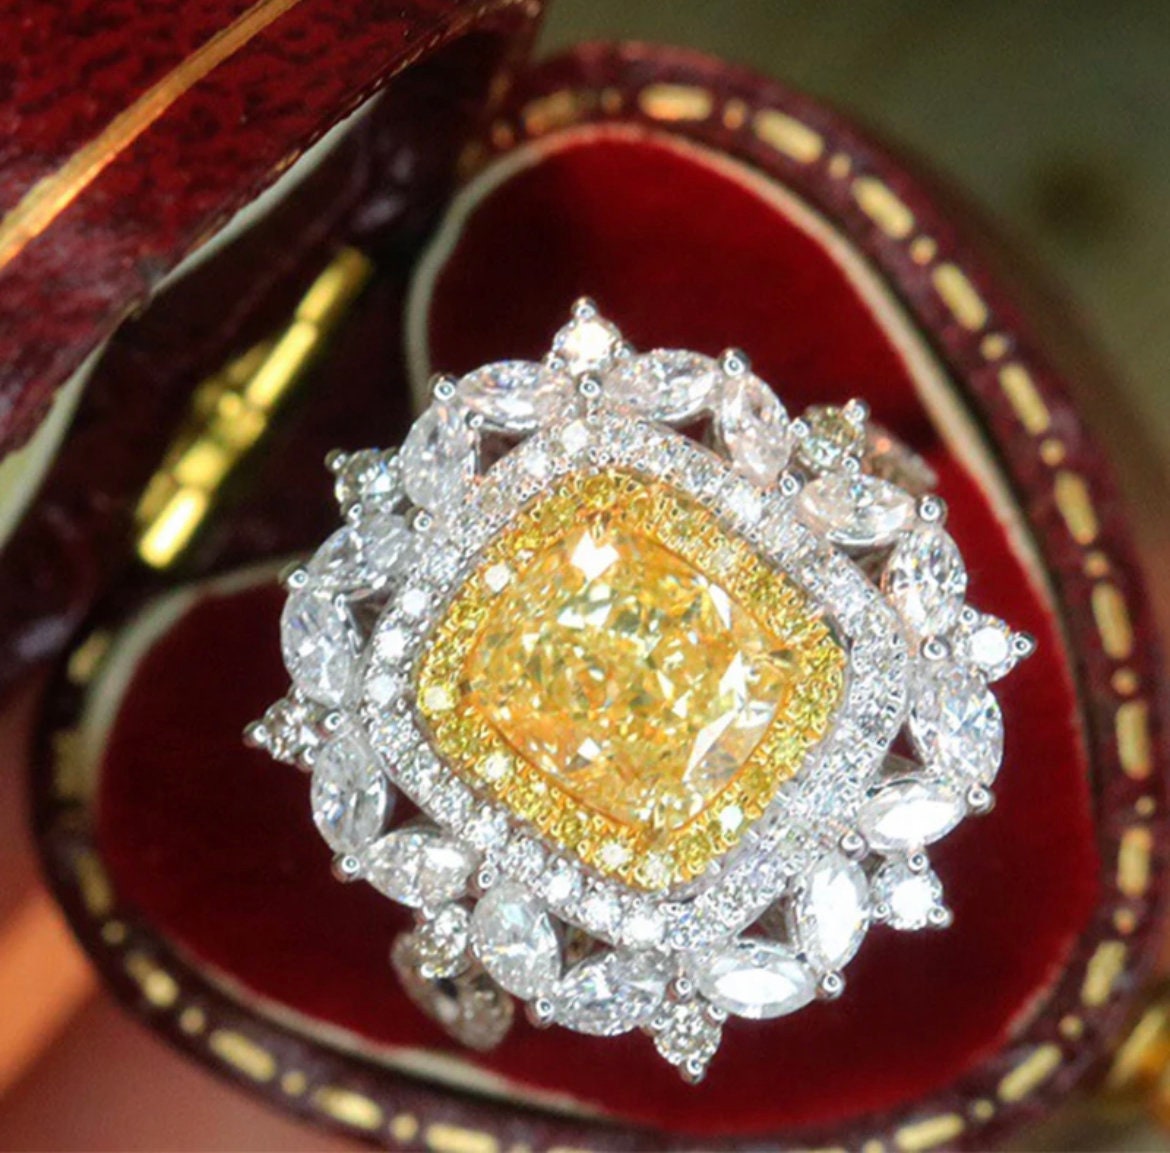 Stunning 2ct Natural Yellow Diamond Ring with 1.50ct White Diamonds